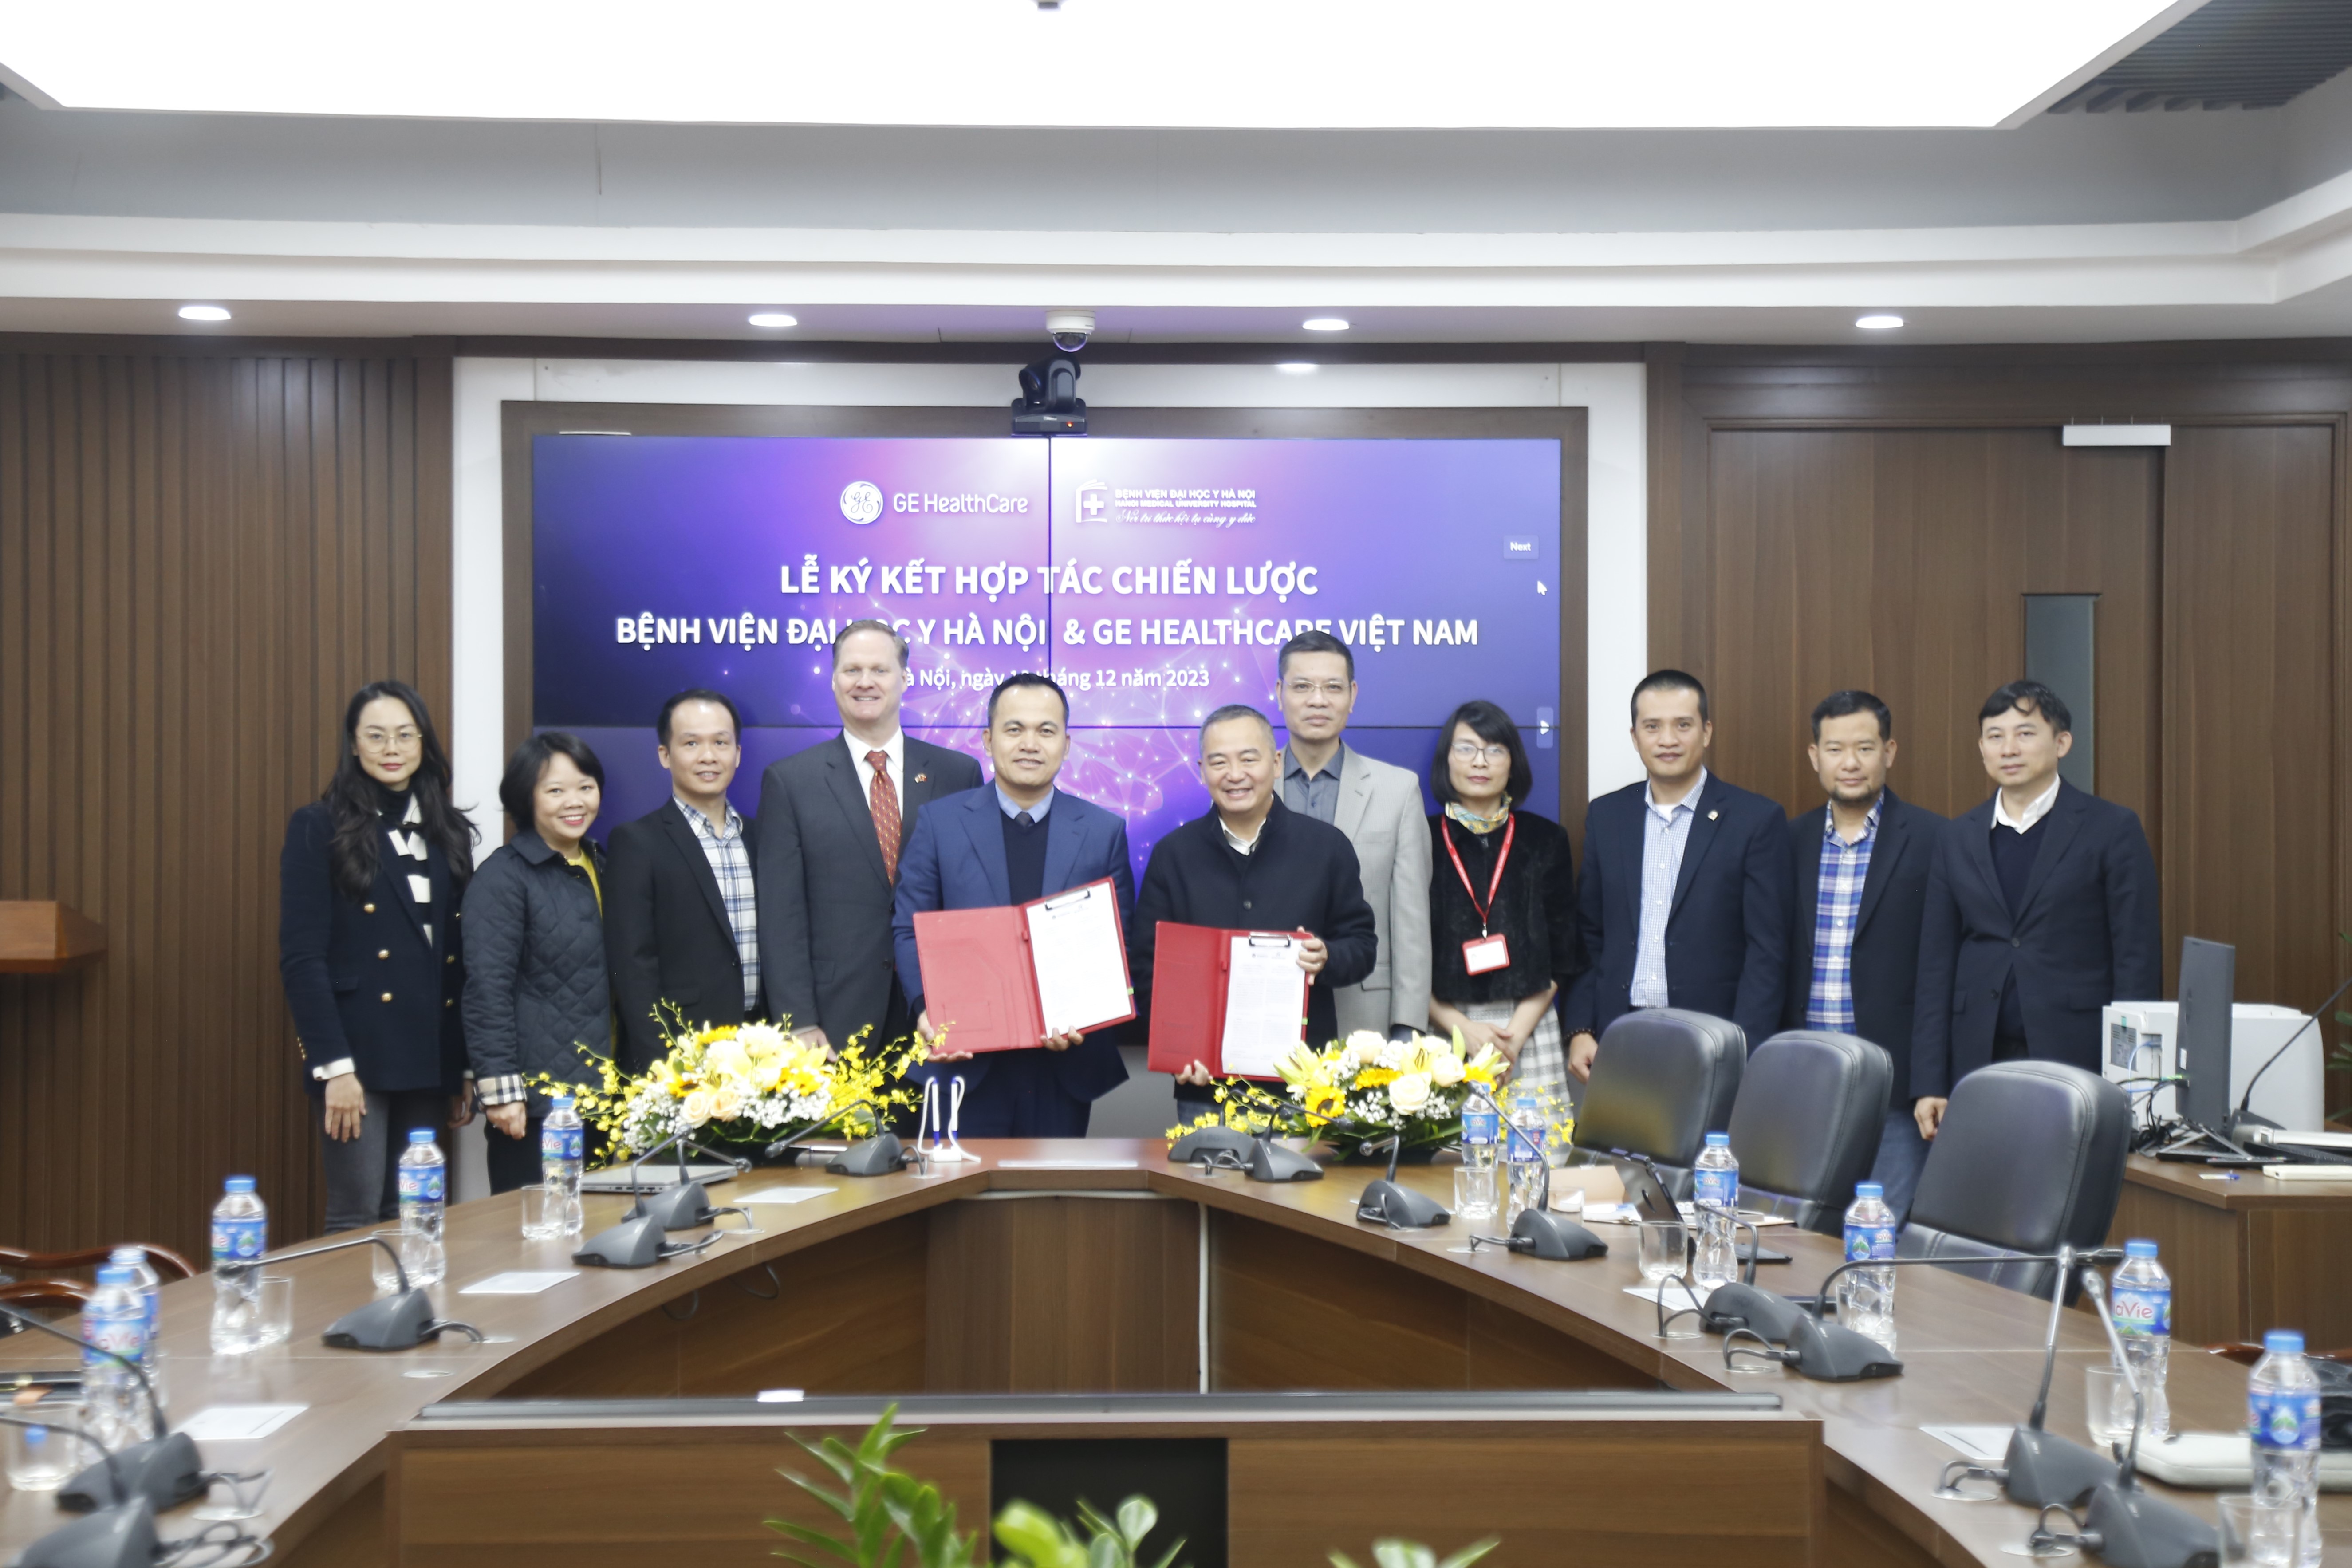 Lễ ký kết hợp tác chiến lược giữa Bệnh viện Đại học Y Hà Nội và GE HealthCare Việt Nam